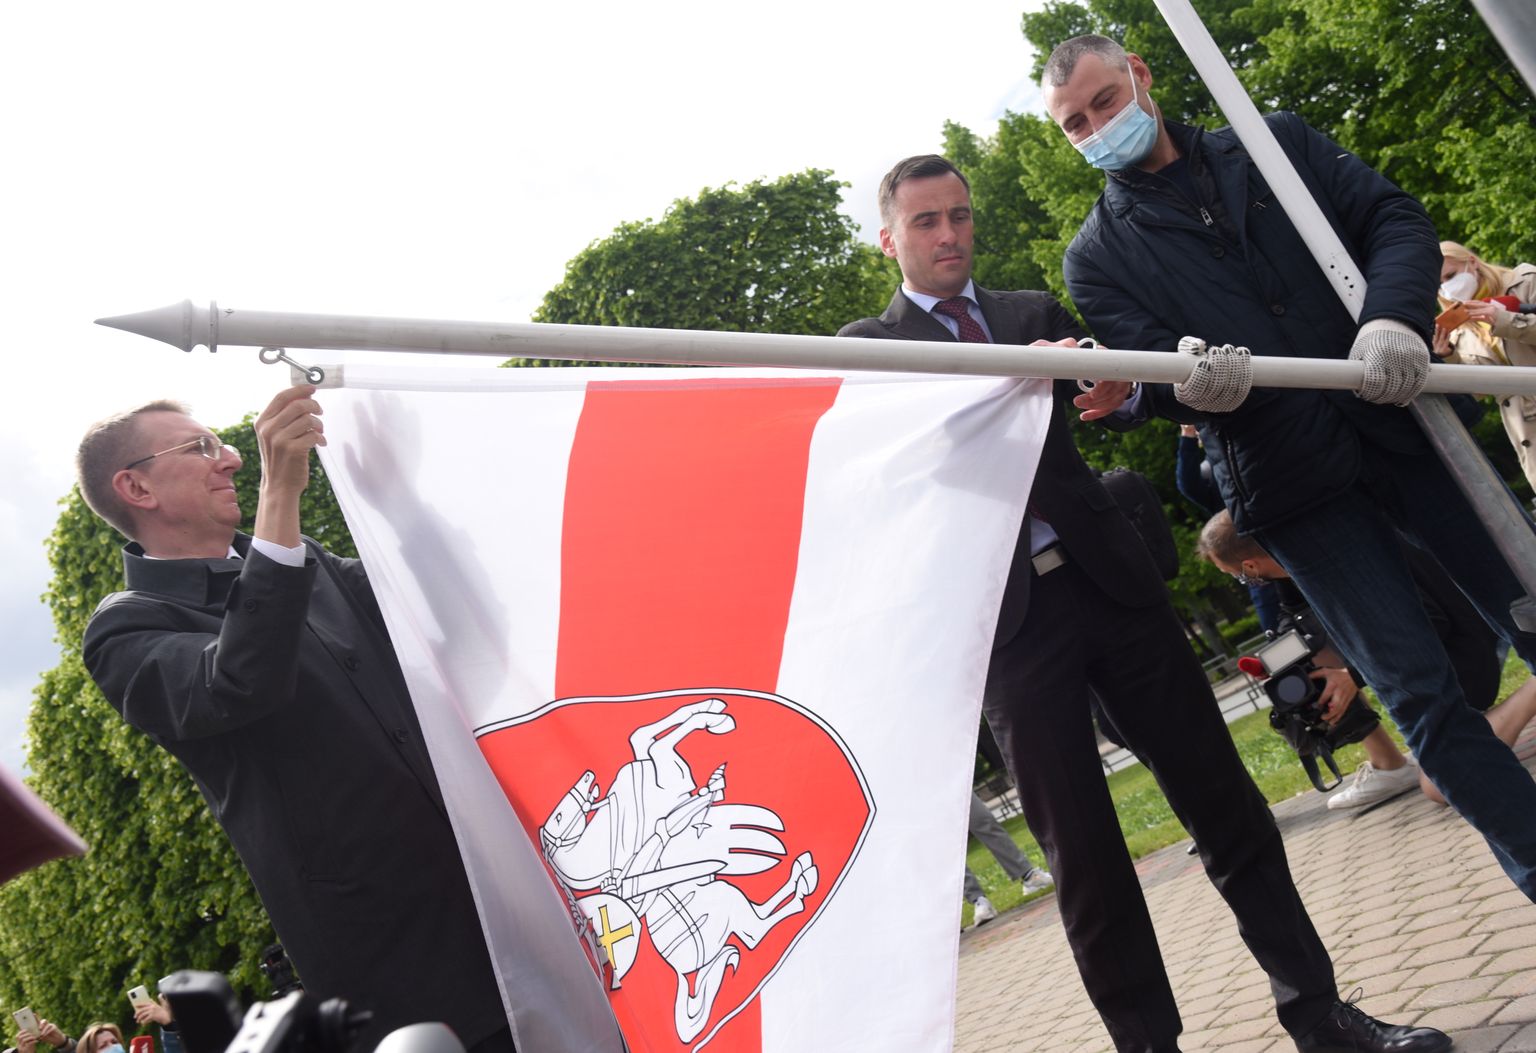 Ārlietu ministrs Edgars Rinkēvičs (no kreisās) un Rīgas domes priekšsēdētājs Mārtiņš Staķis Brīvības bulvāra un Elizabetes ielas krustojumā, kur izvietoti Pasaules hokeja čempionāta dalībvalstu karogi, aizstāj Baltkrievijas oficiālo karogu ar Baltkrievijas vēsturisko sarkanbalto karogu, paužot atbalstu Lukašenko režīma opozicionāriem un represētajiem.